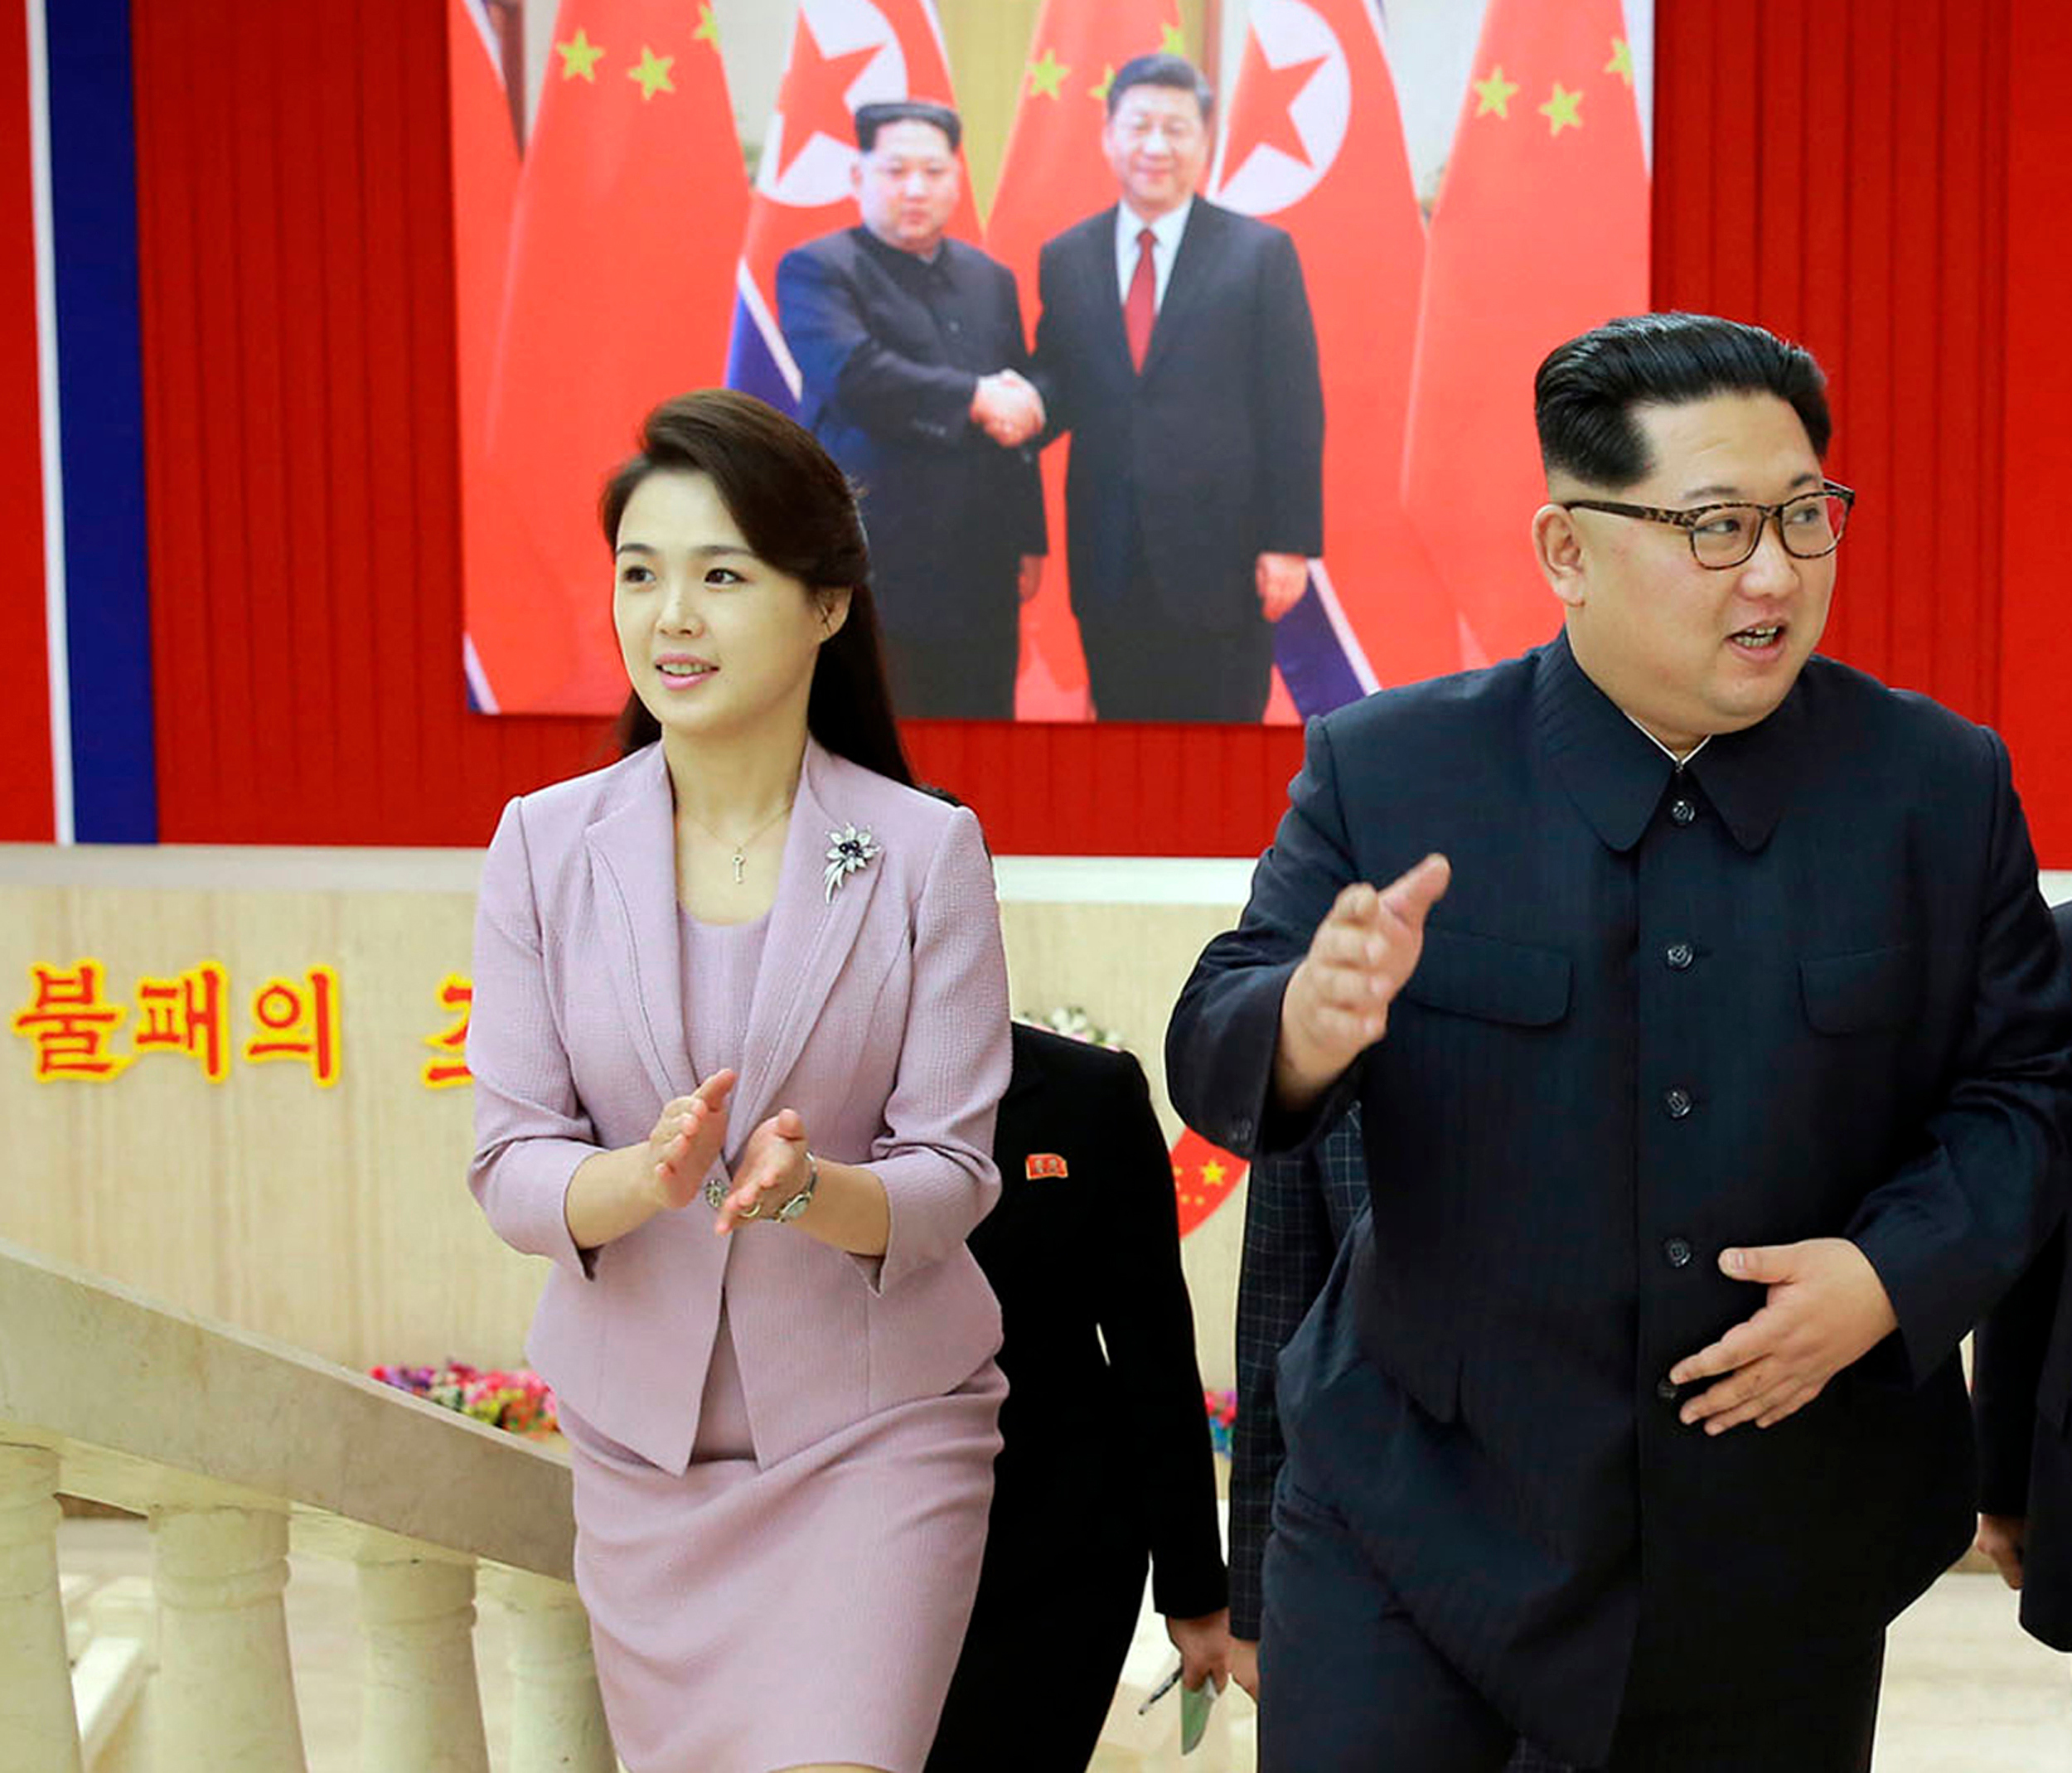 лидер северной кореи с женой